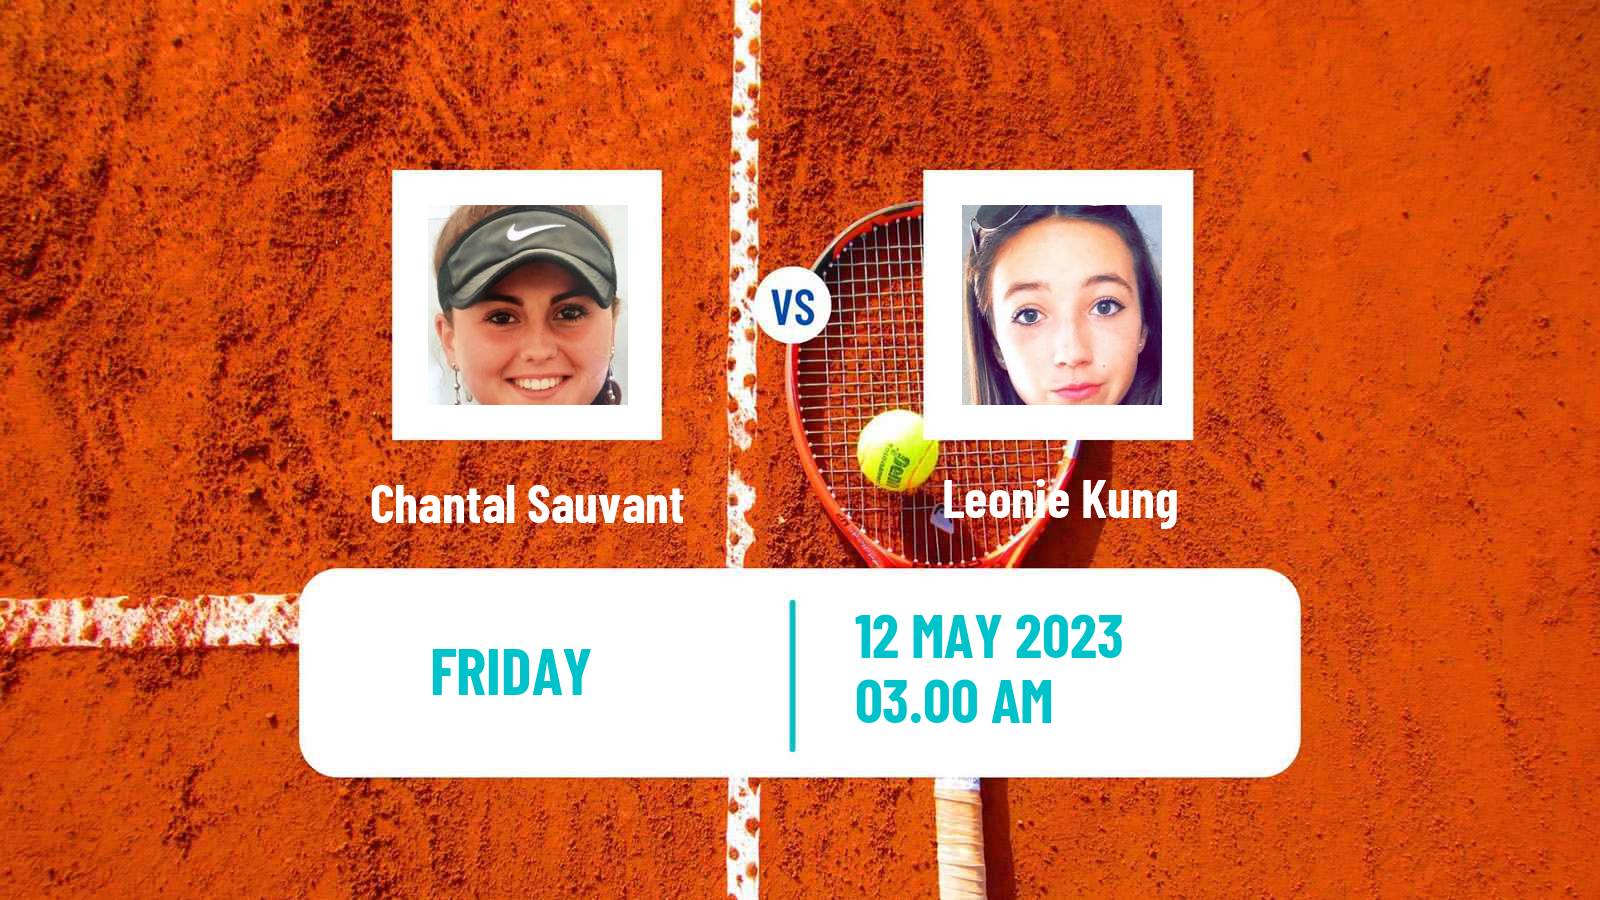 Tennis ITF Tournaments Chantal Sauvant - Leonie Kung